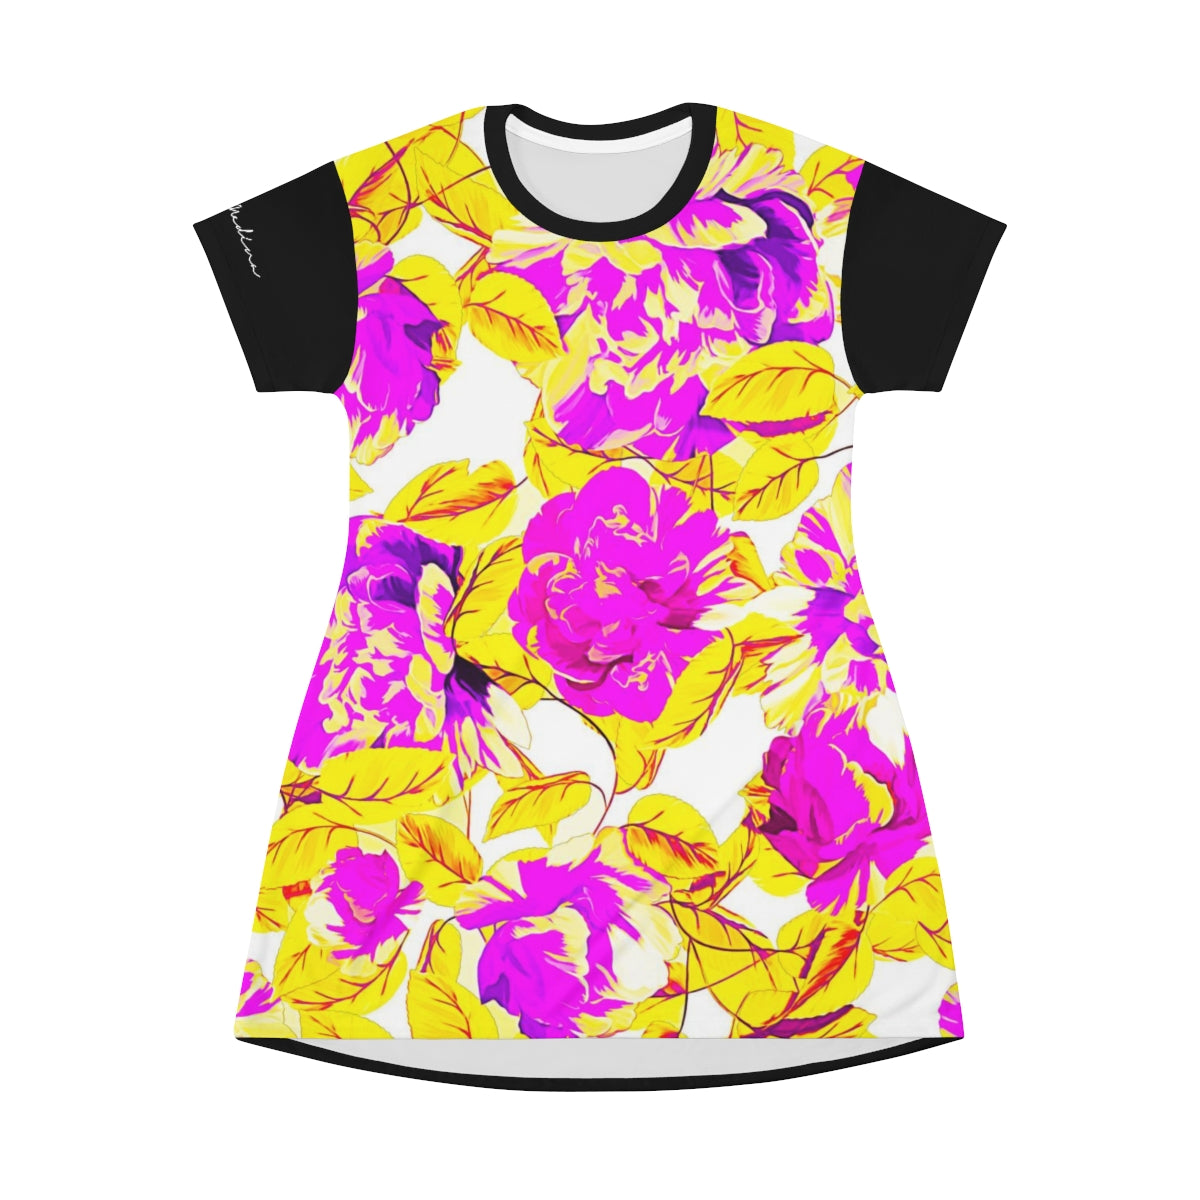 Shirtdress, Black Neon Floral Motive